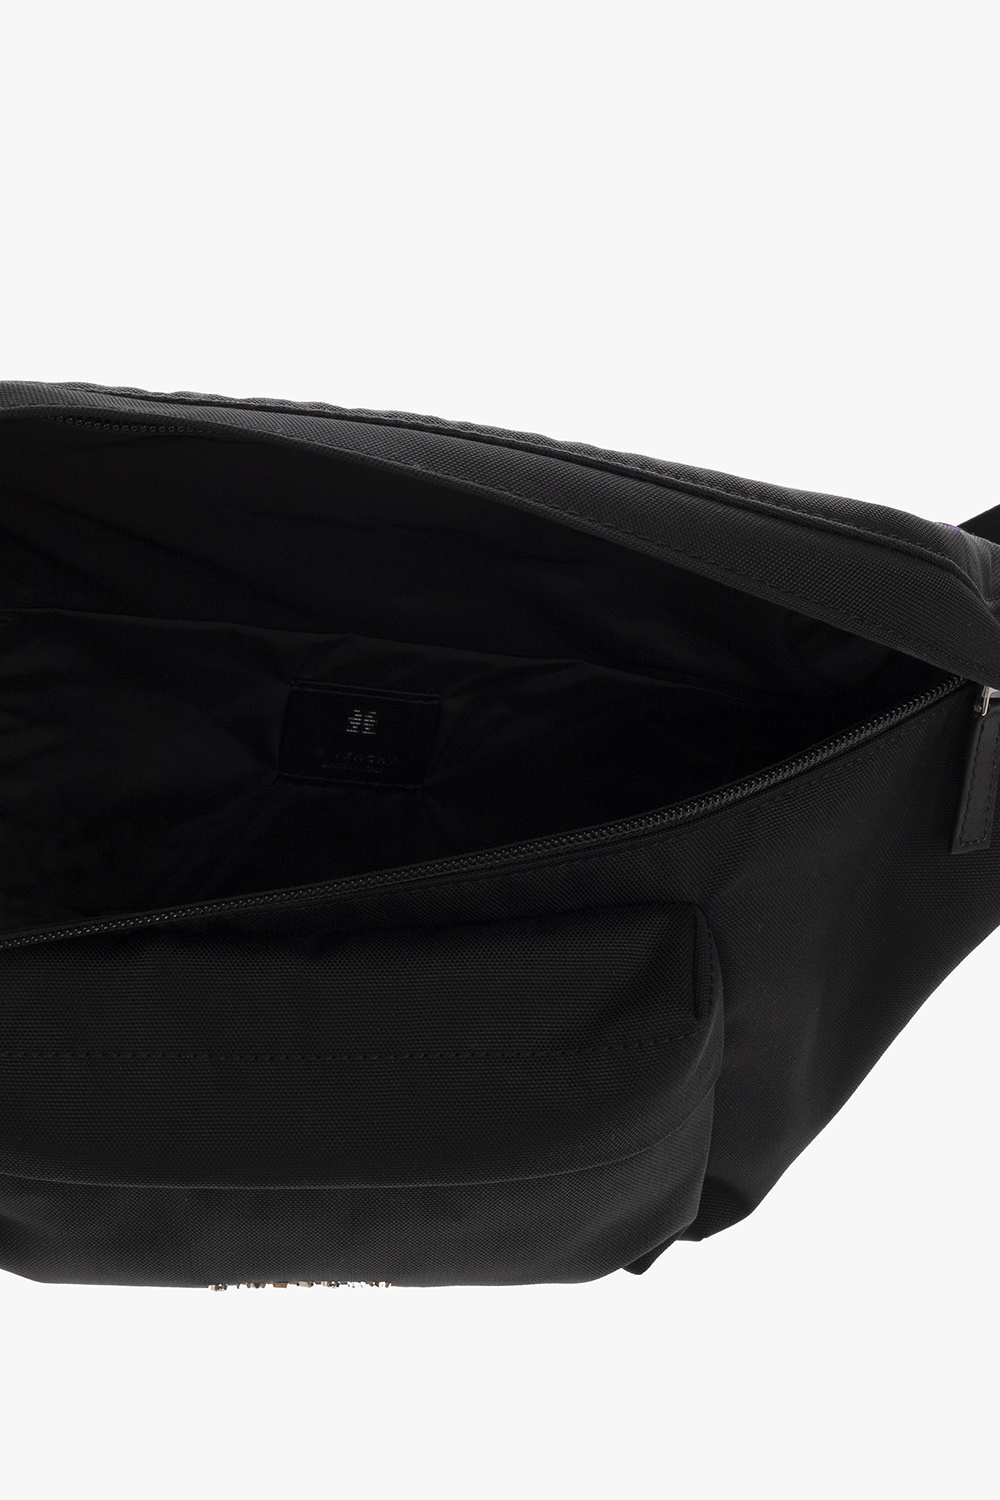 Givenchy ‘Essential’ belt bag